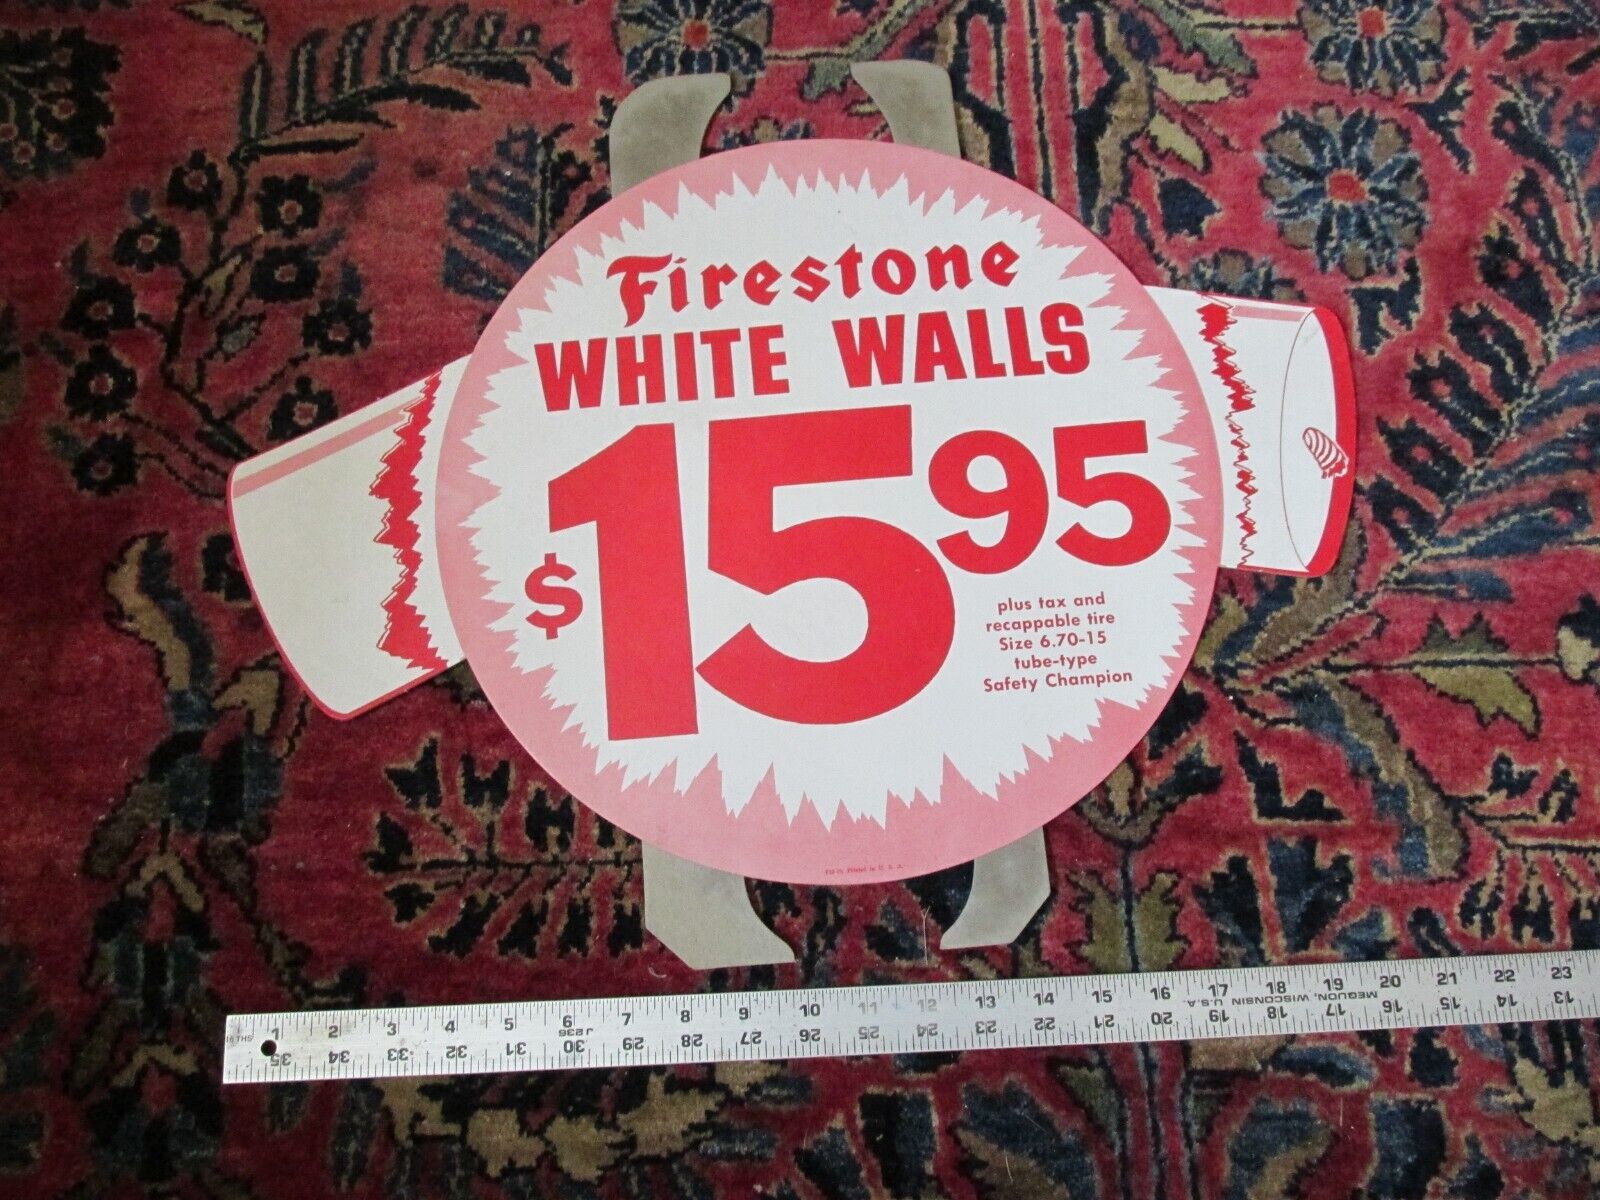 VTG FIRESTONE DEALER AD 1959 TIRE INSERT JULY 4TH SIGN FIRECRACKER WHITE WALLS